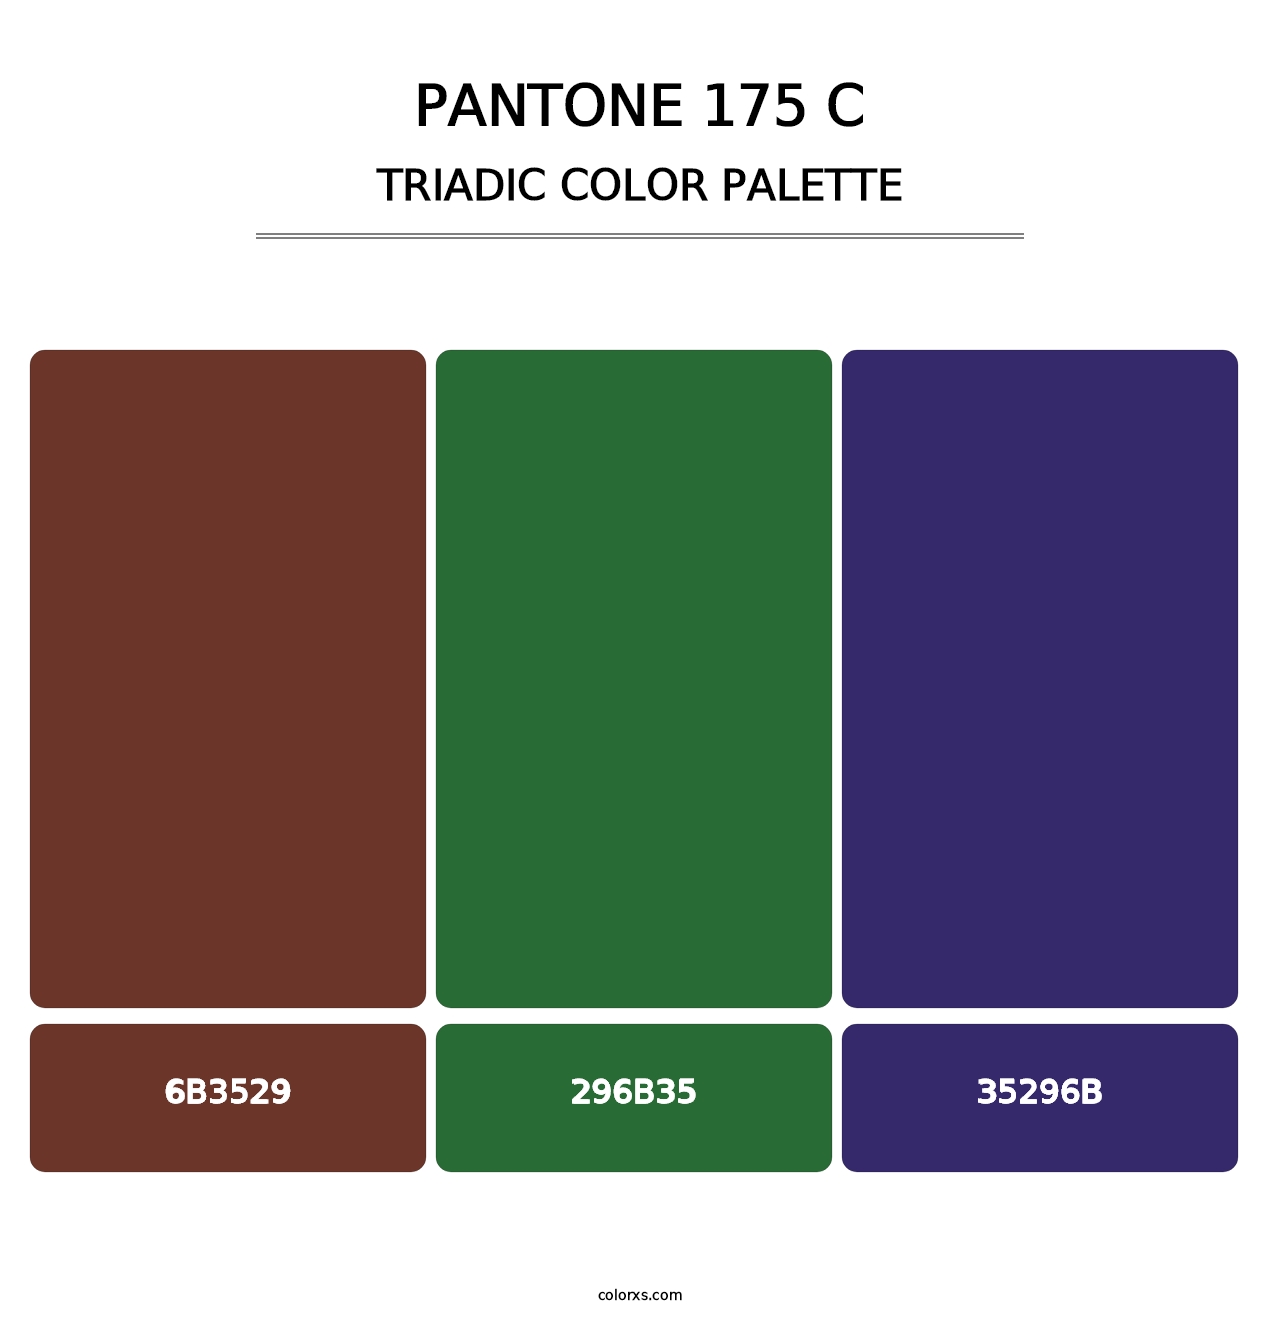 PANTONE 175 C - Triadic Color Palette